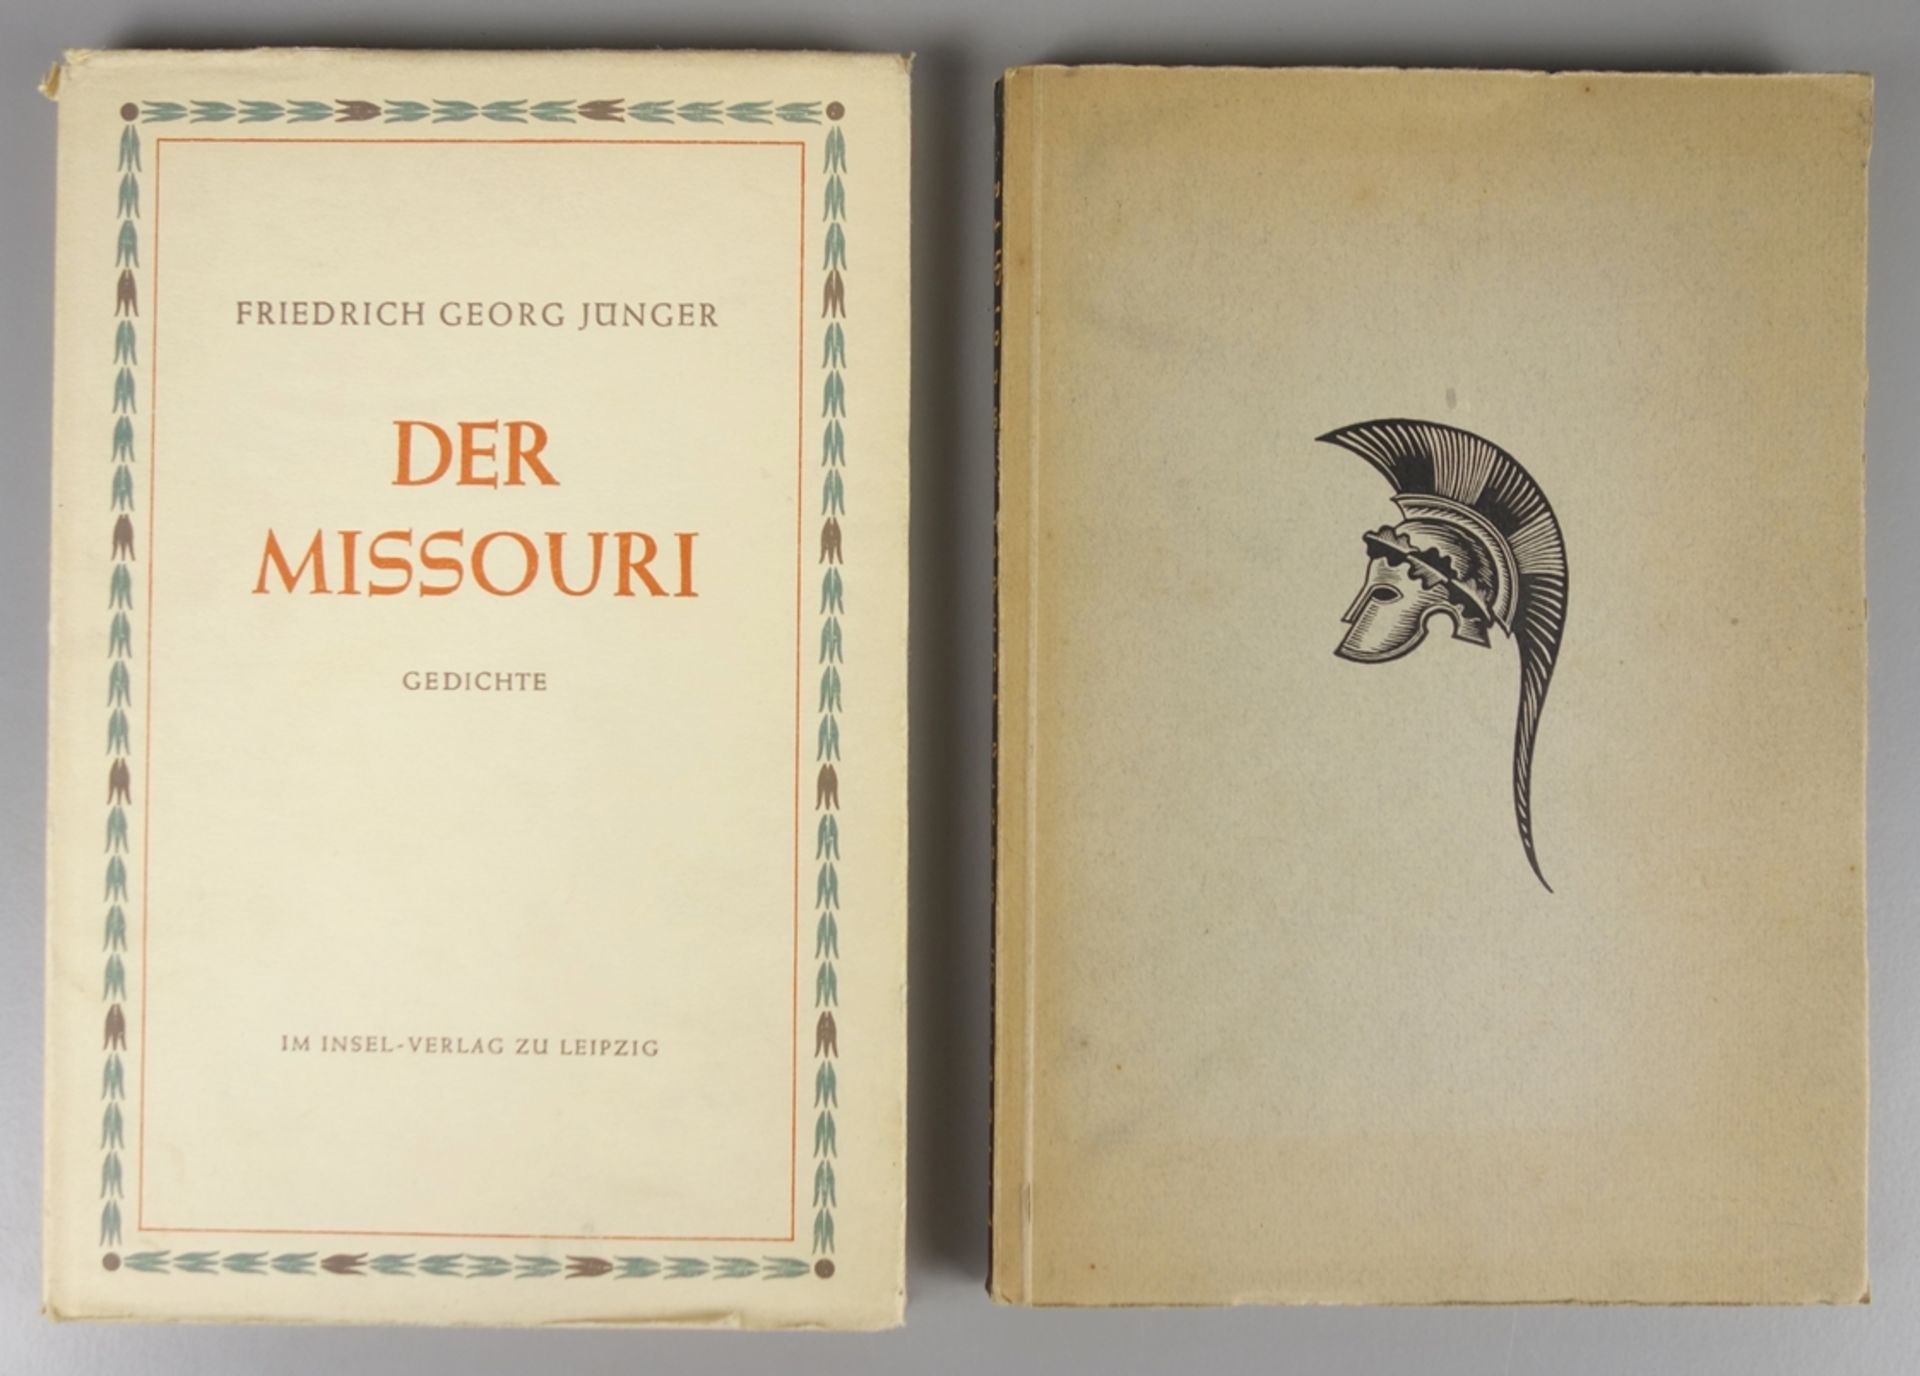 2 Bücher mit Gedichten von Friedrich Georg Jünger, 1934 und 1940